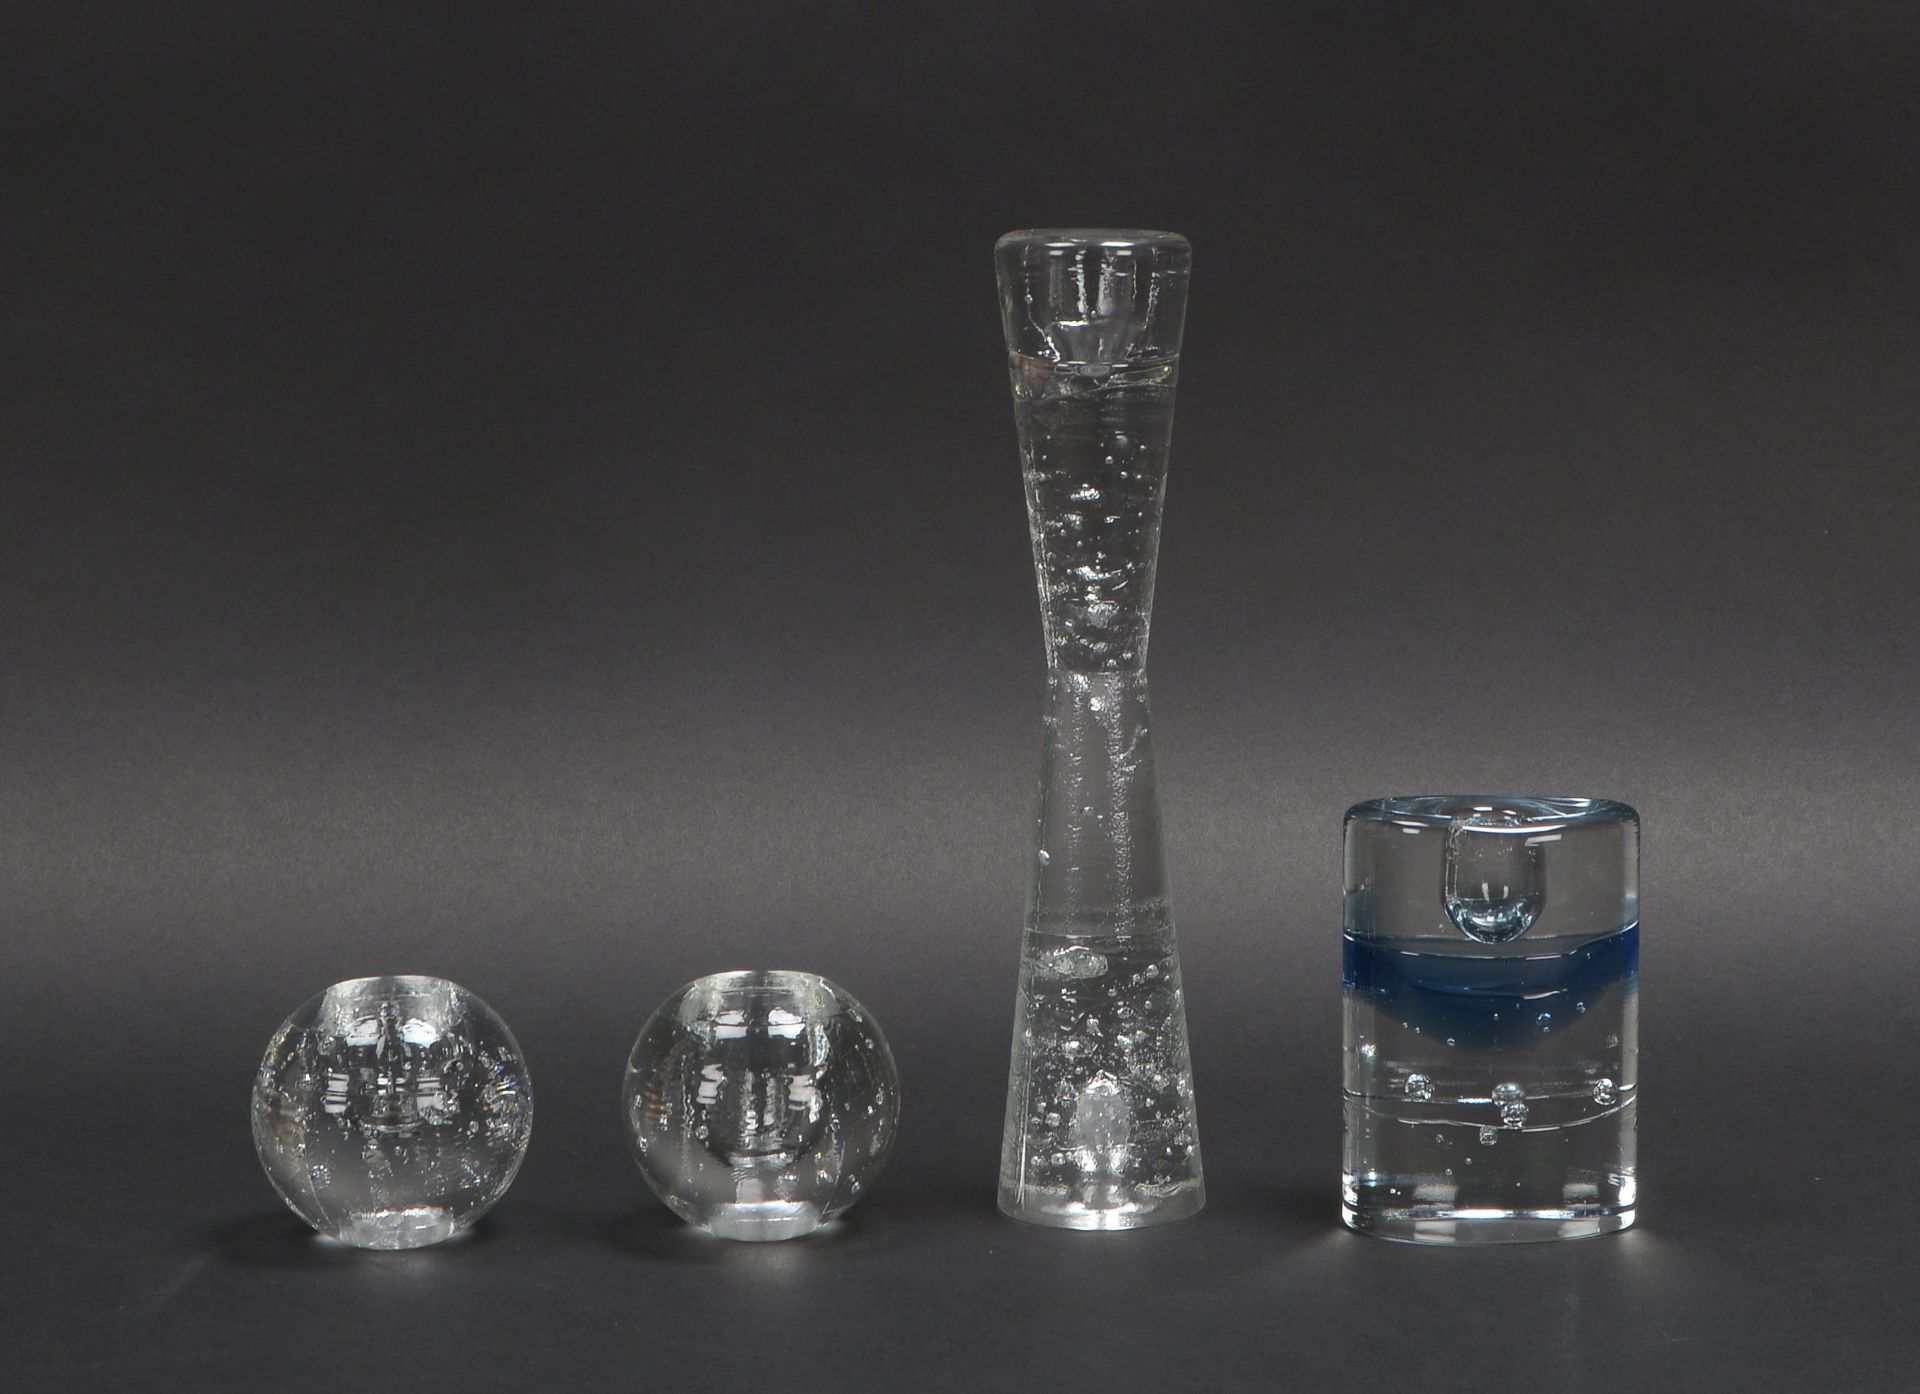 Iittala/Finnland, kleines Tischkerzenleuchter-Konvolut, Glas, verschiedene Formen; Höhe 6 cm - 25 cm